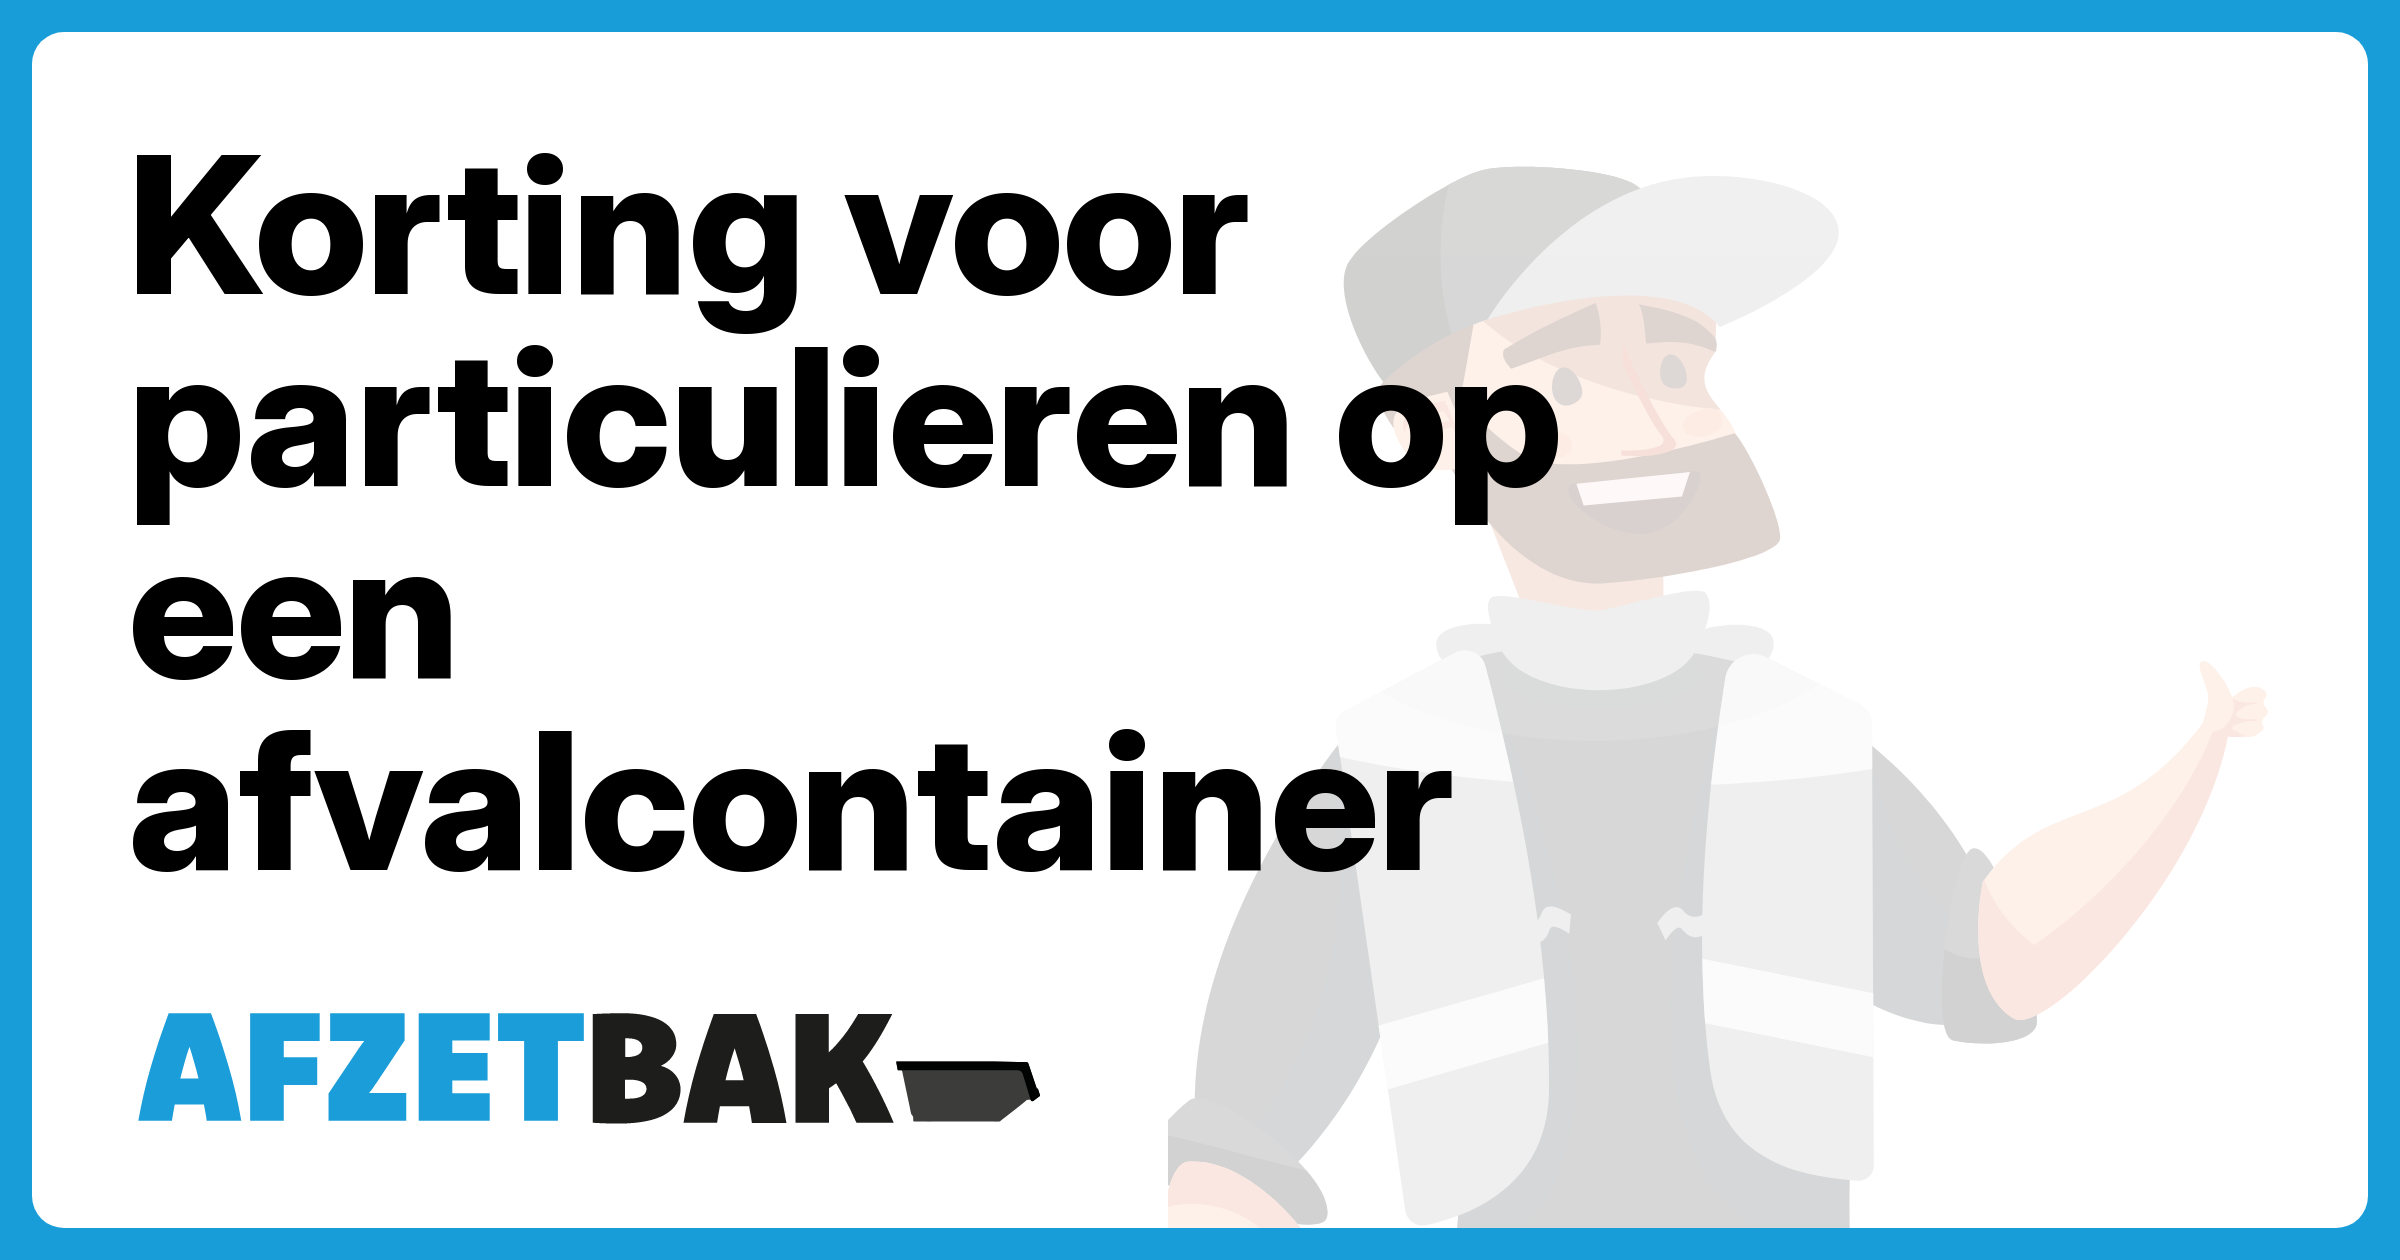 Korting voor particulieren op een afvalcontainer - Afzetbak.nl